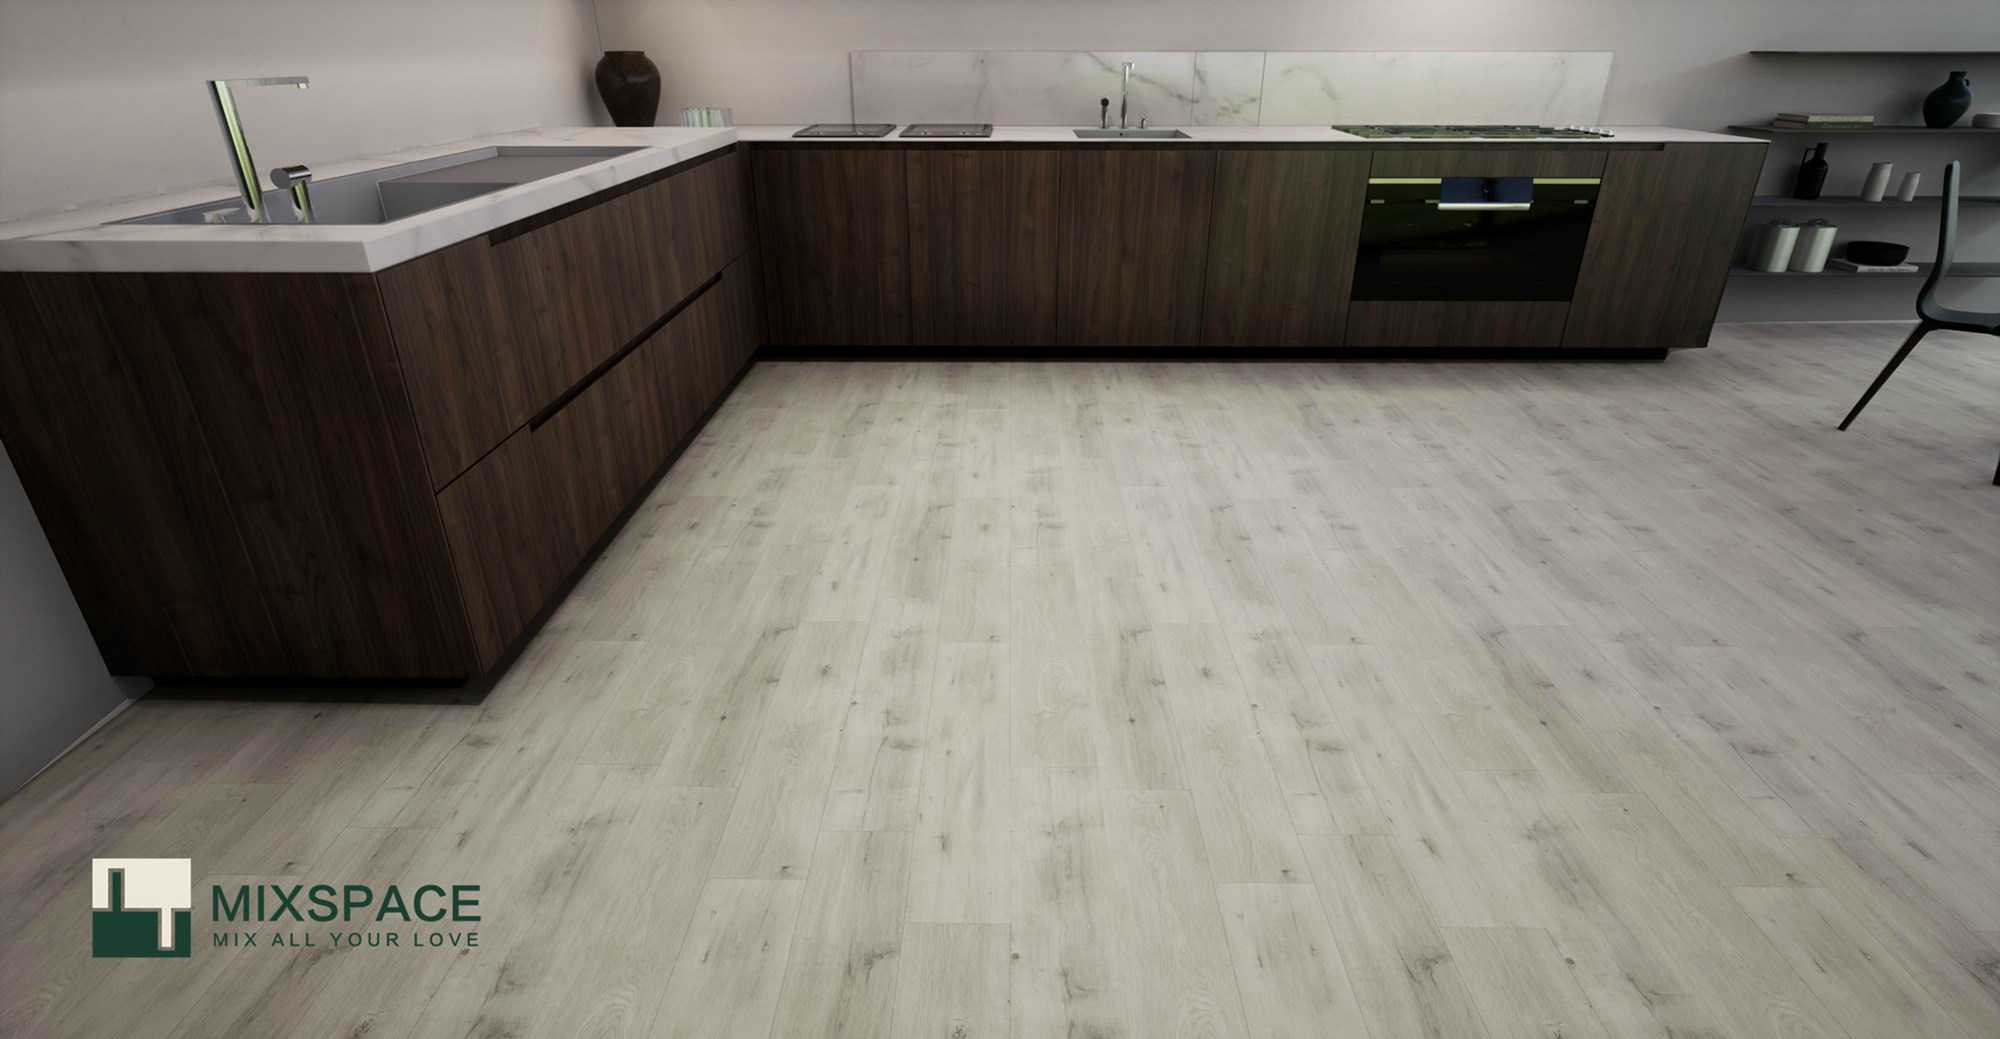 SPC flooring in the kitchen room.jpg